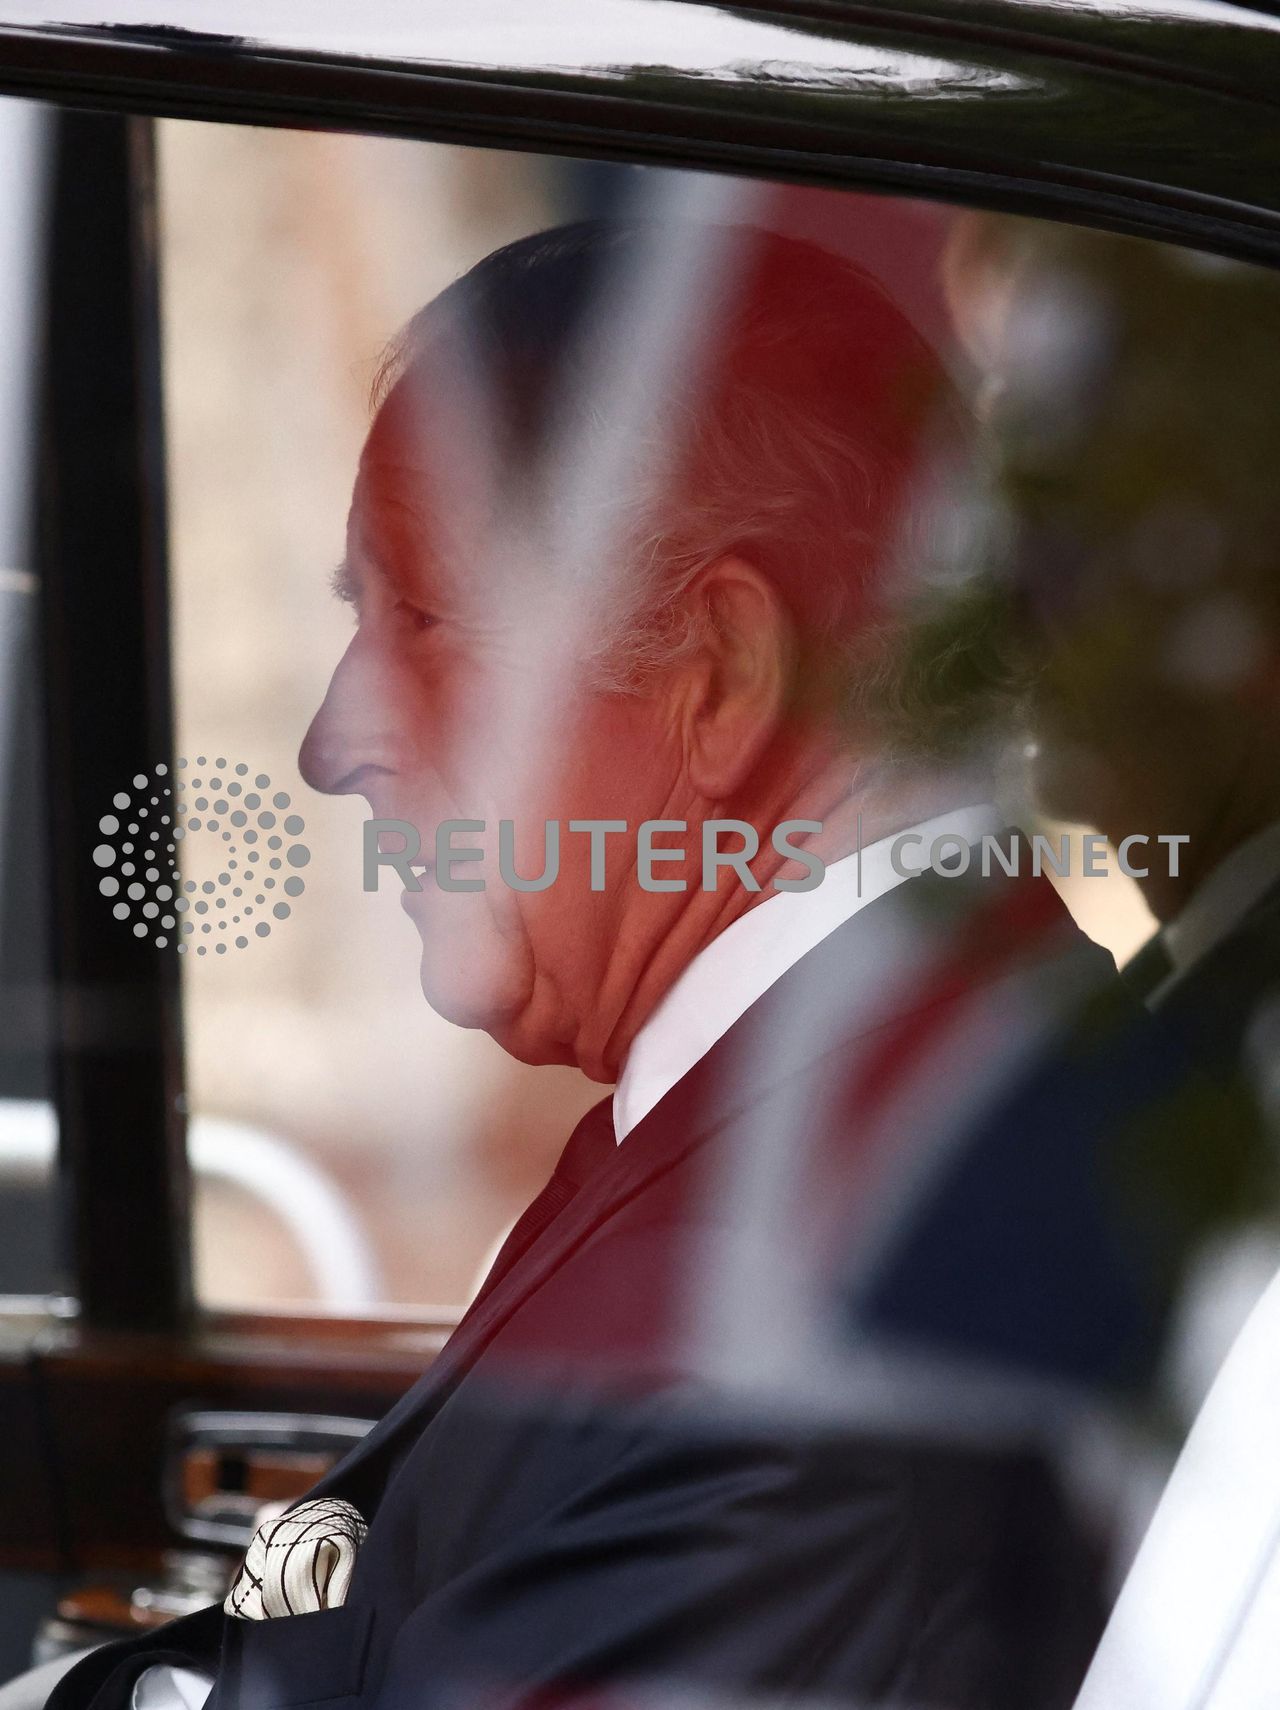 Ο βασιλιάς Κάρολος φεύγει από το Clarence House πριν από την πομπή όπου το φέρετρο της βασίλισσας της Βρετανίας Ελισάβετ θα μεταφερθεί από τα Ανάκτορα του Μπάκιγχαμ στα κτήρια του Κοινοβουλίου, Βρετανία, 14 Σεπτεμβρίου 2022. REUTERS/Henry Nicholls/Pool